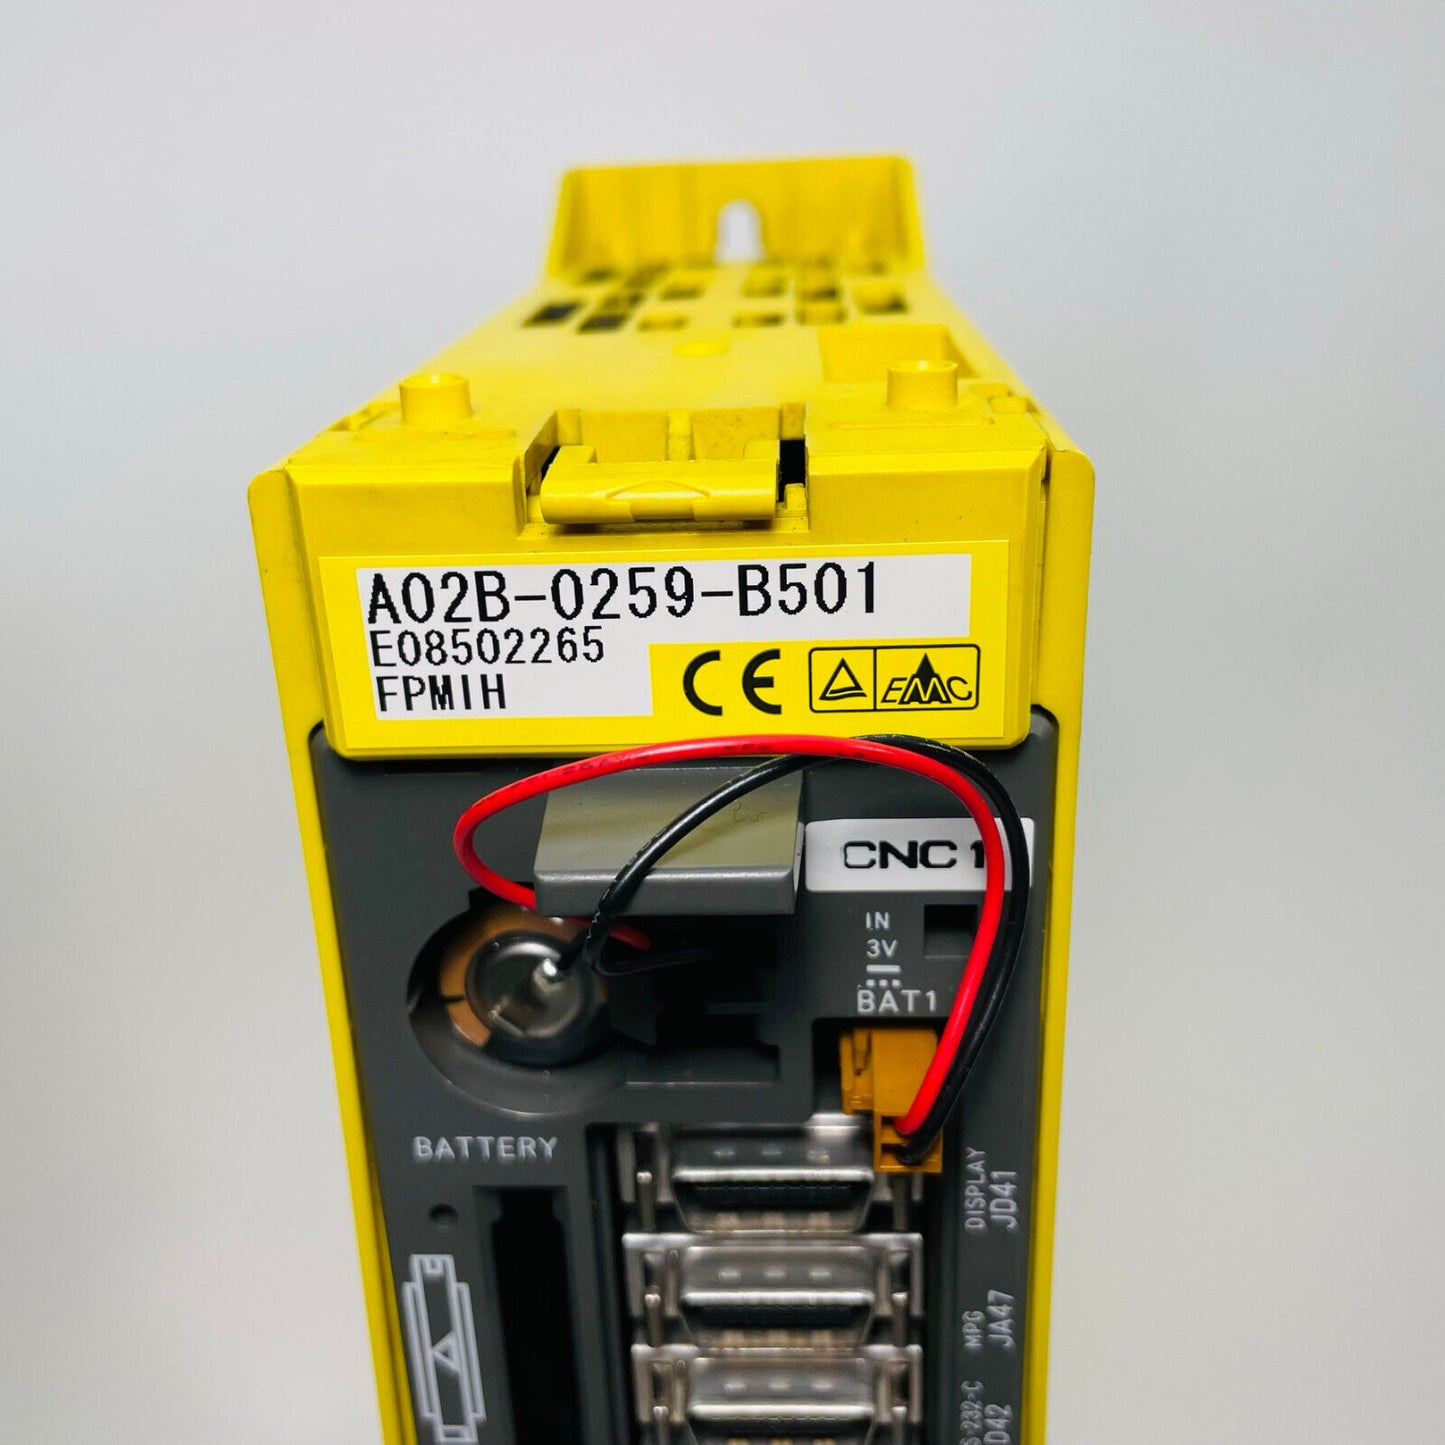 FANUC A02B-0259-B501 Power Mate Controller